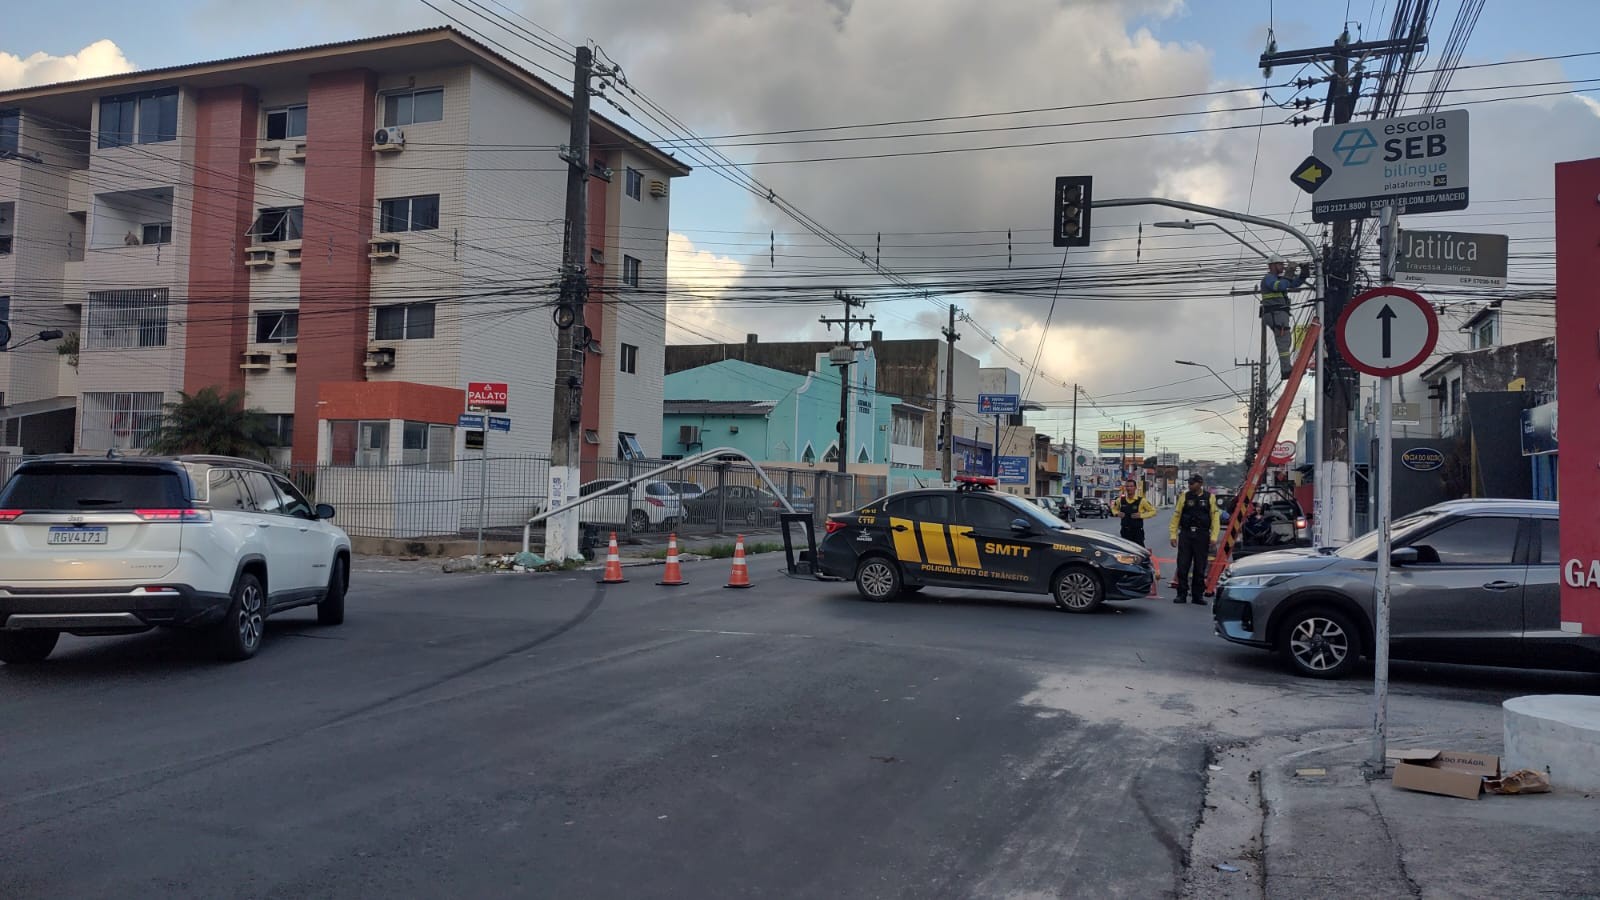 VÍDEO: Motorista perde controle de carro e bate em semáforo na Jatiúca, em Maceió